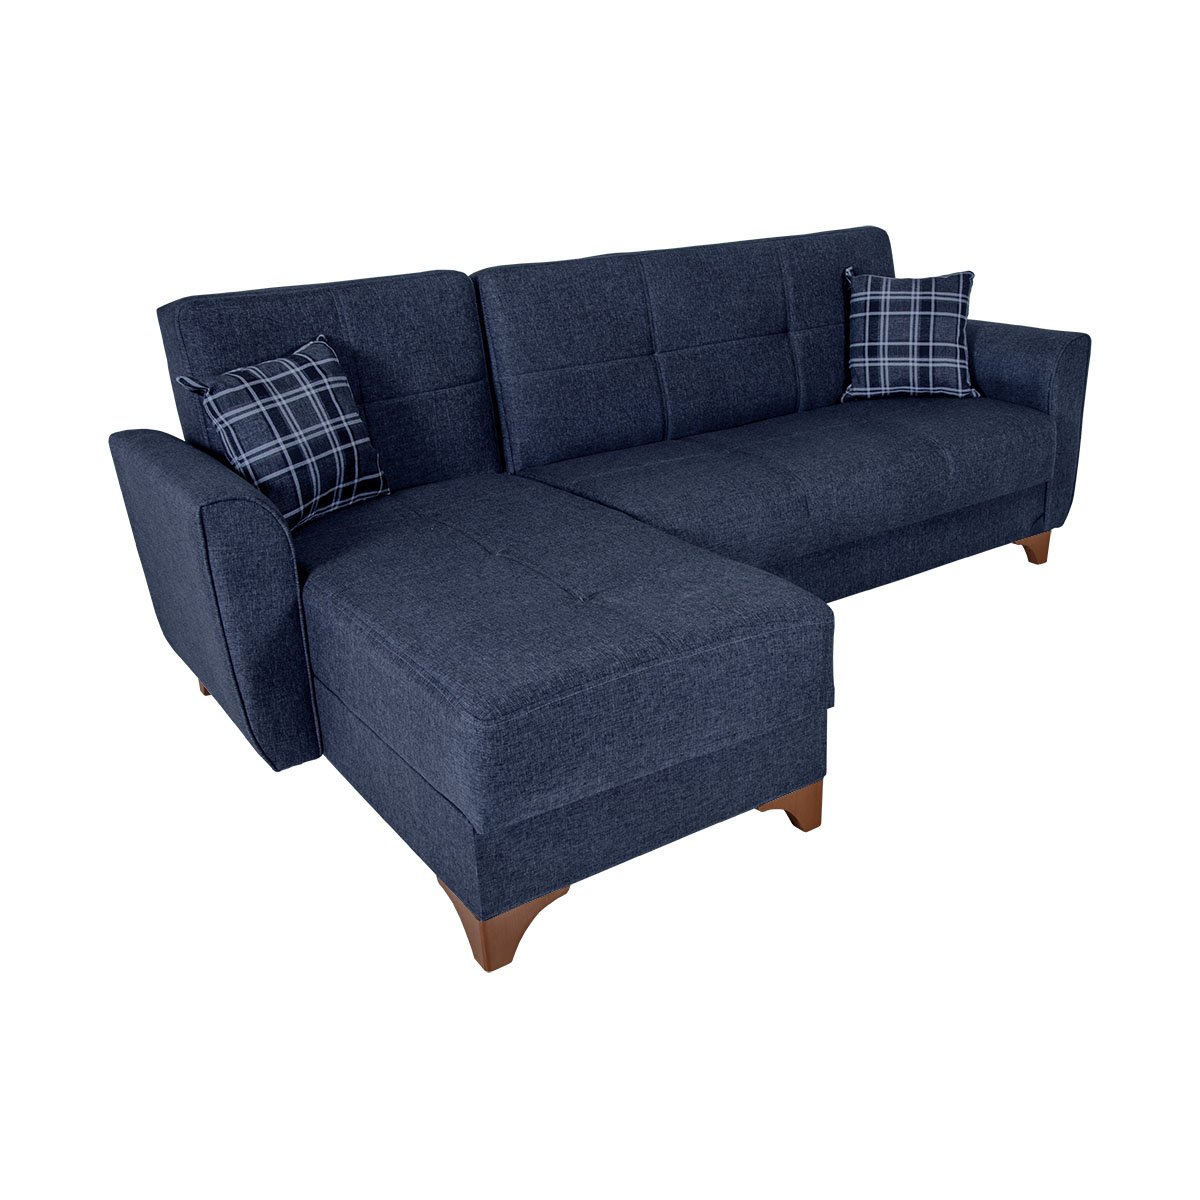 Γωνιακός καναπές-κρεβάτι “MANHATTAN” αναστρέψιμος με ύφασμα σε μπλε χρώμα 240x145x90